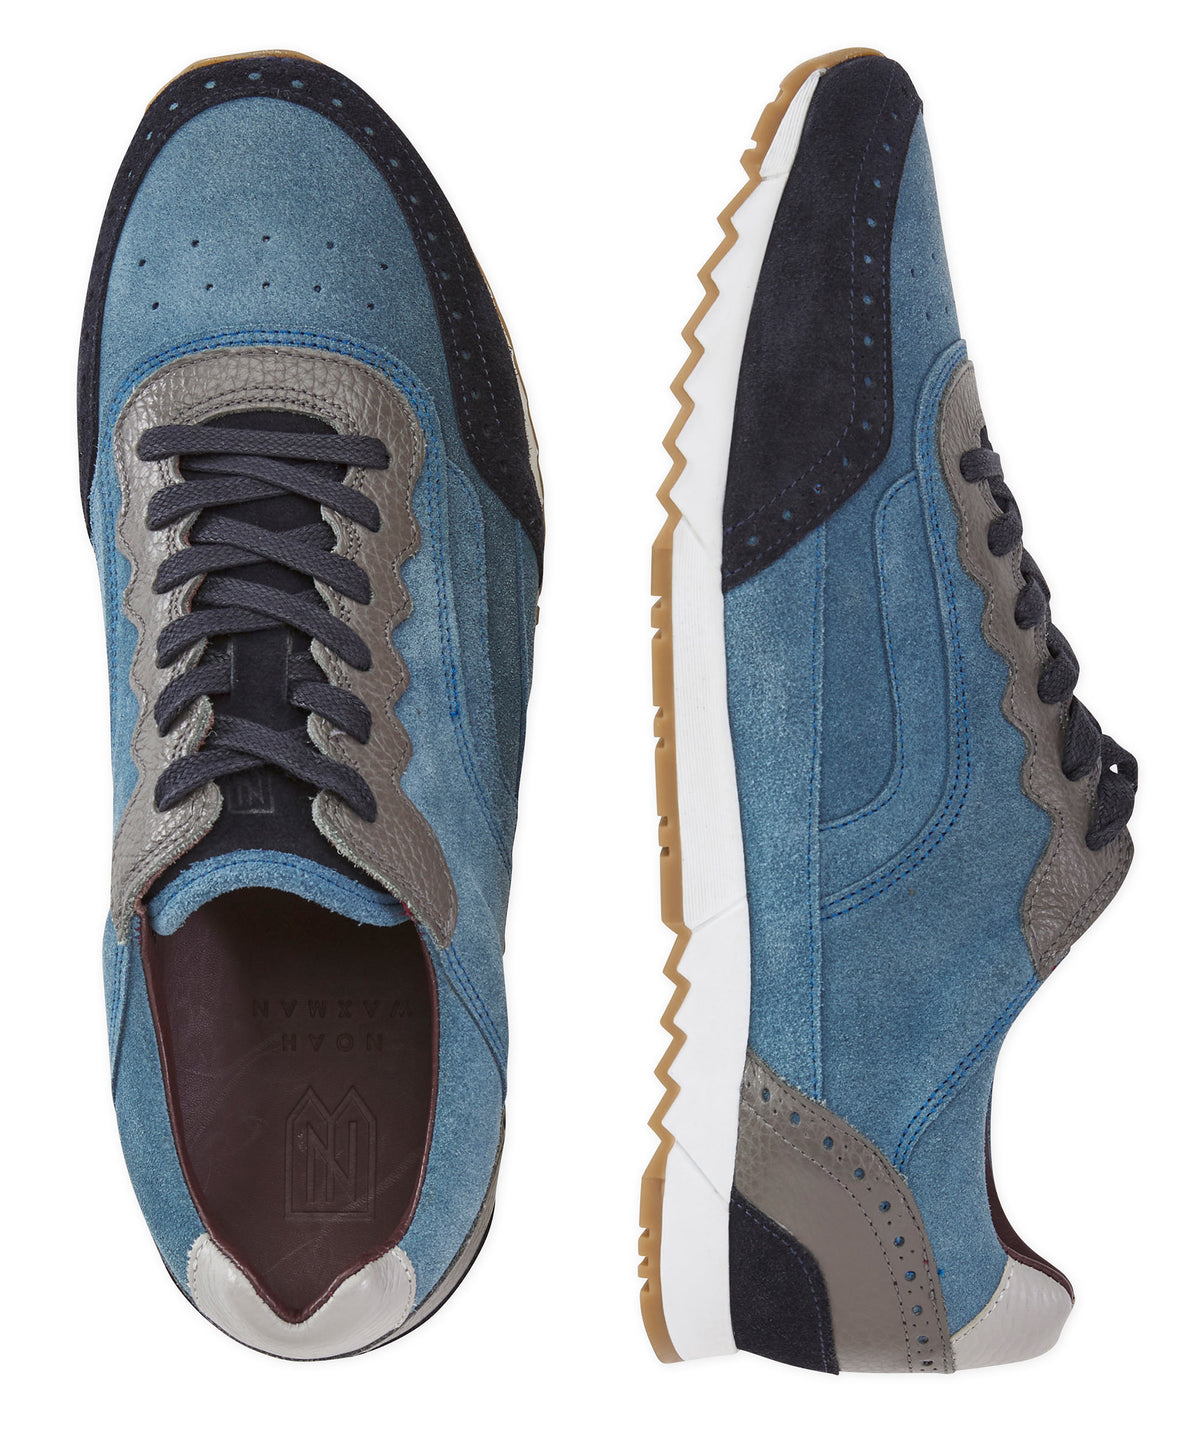 Noah Waxman Greenwich Suede-Pebble Leather Sneaker